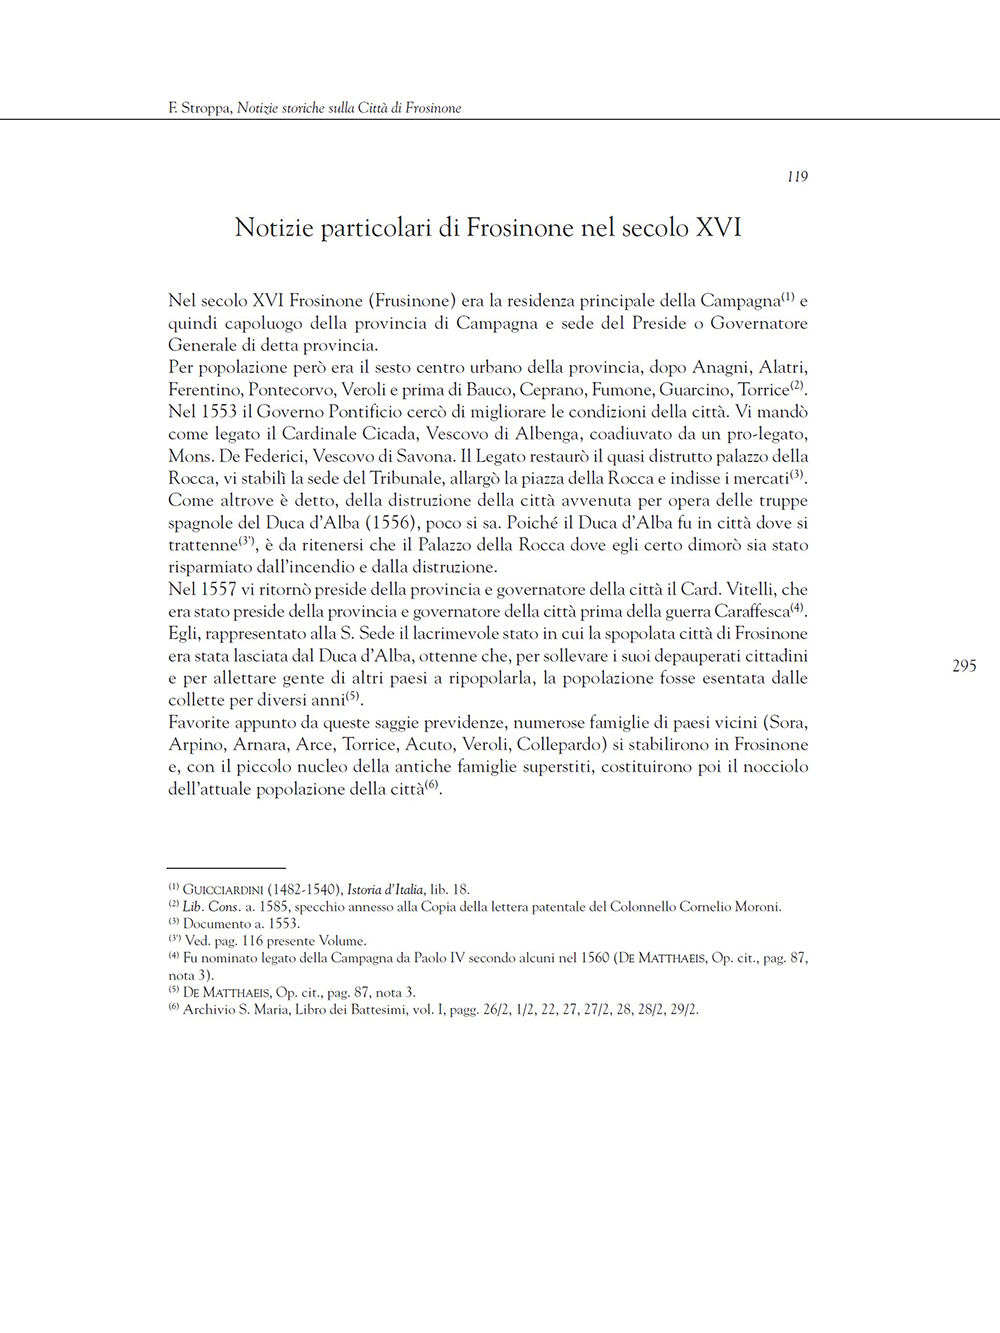 Terra dei Volsci. Notizie particolari di Frosinone nel secolo XVI di Francesco Stroppa